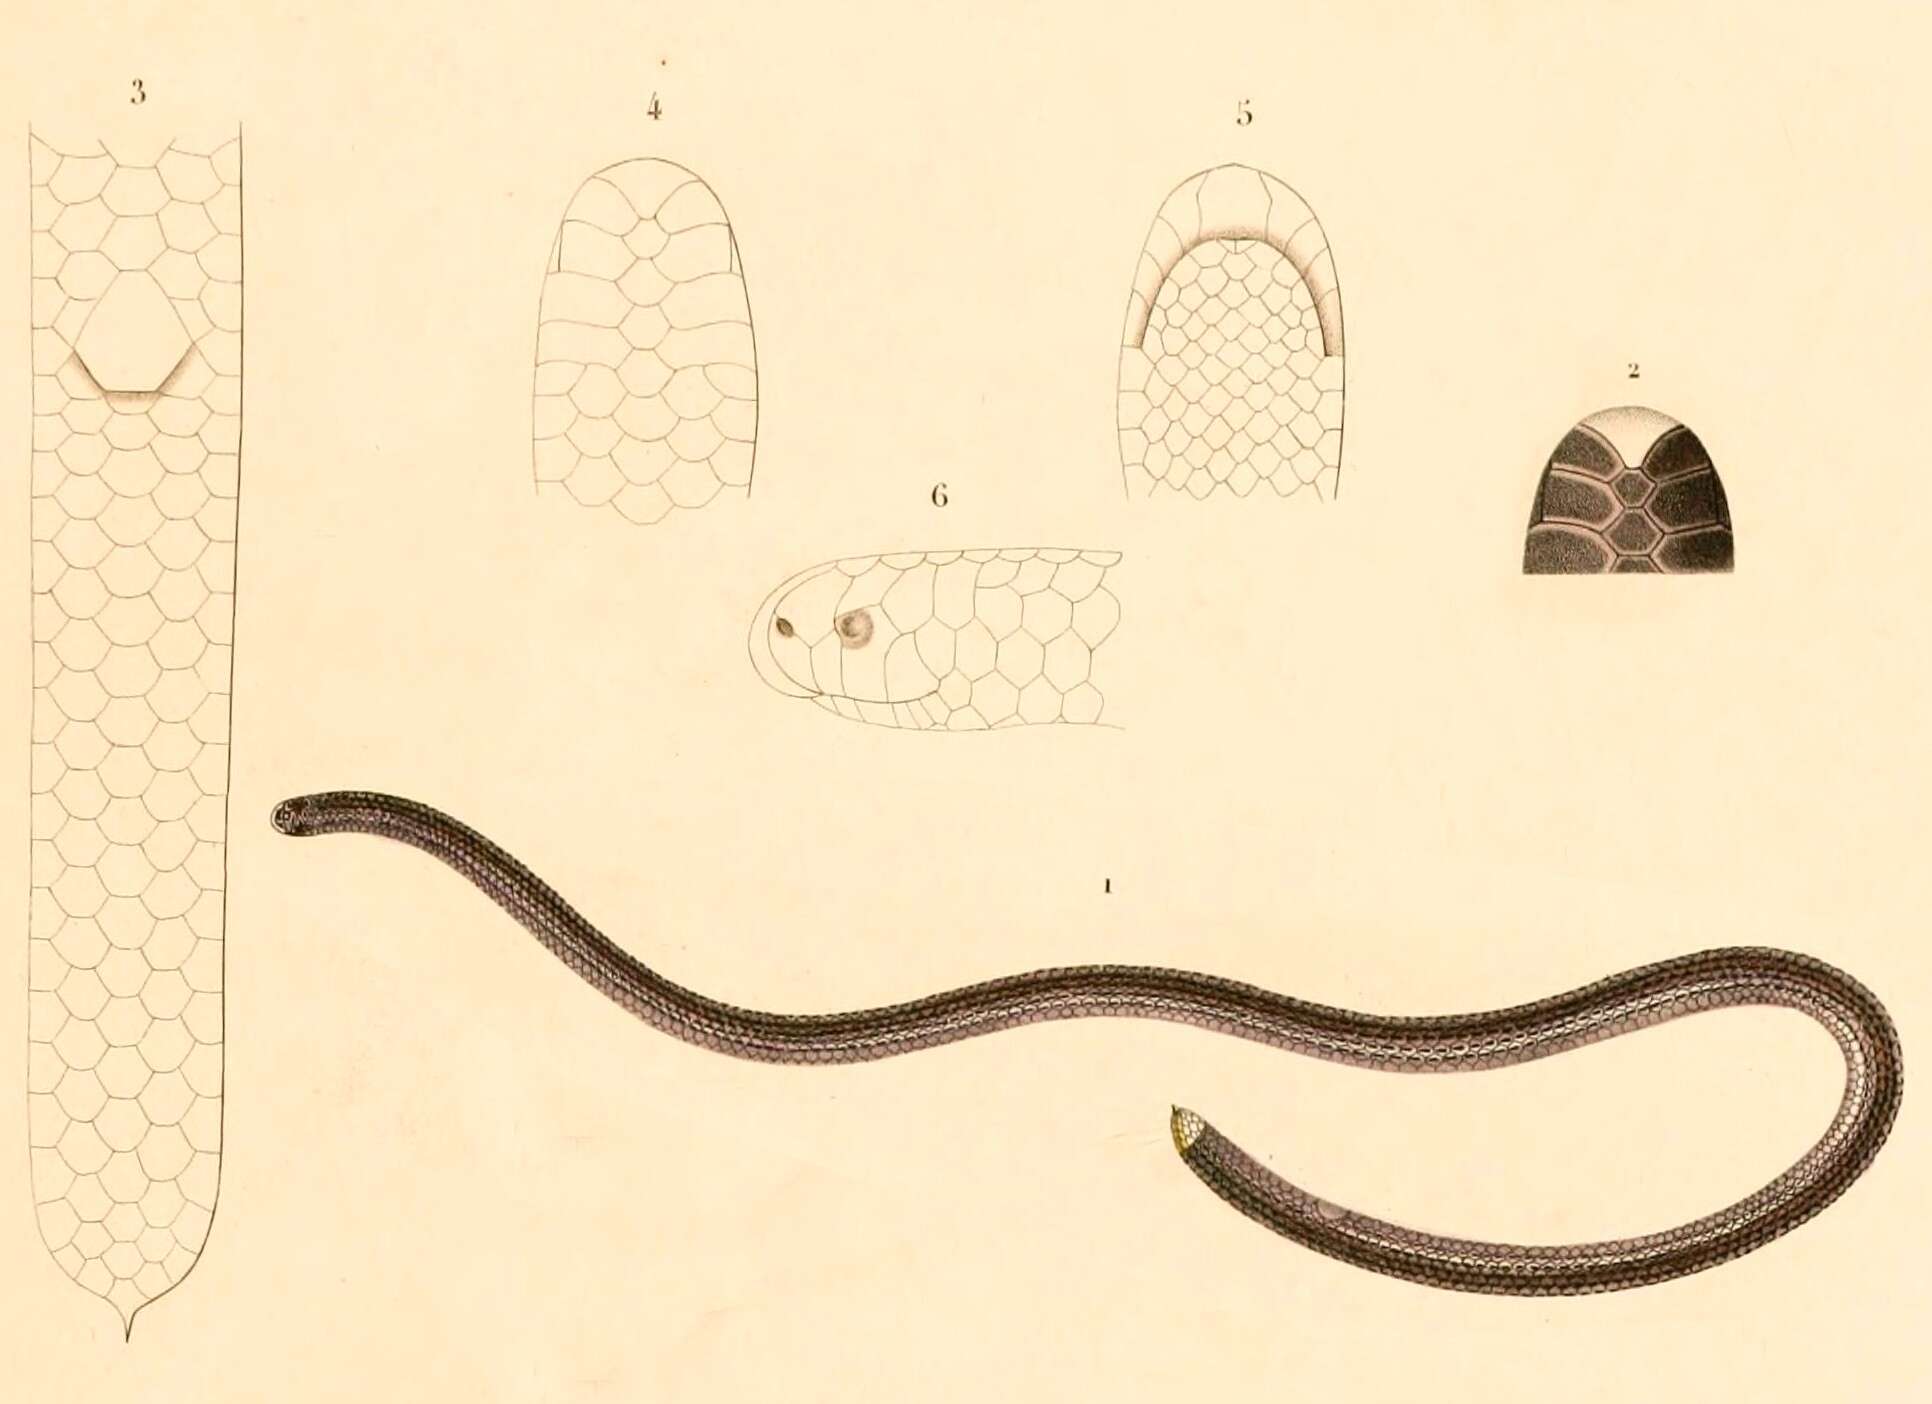 Image of Guyana blind snake